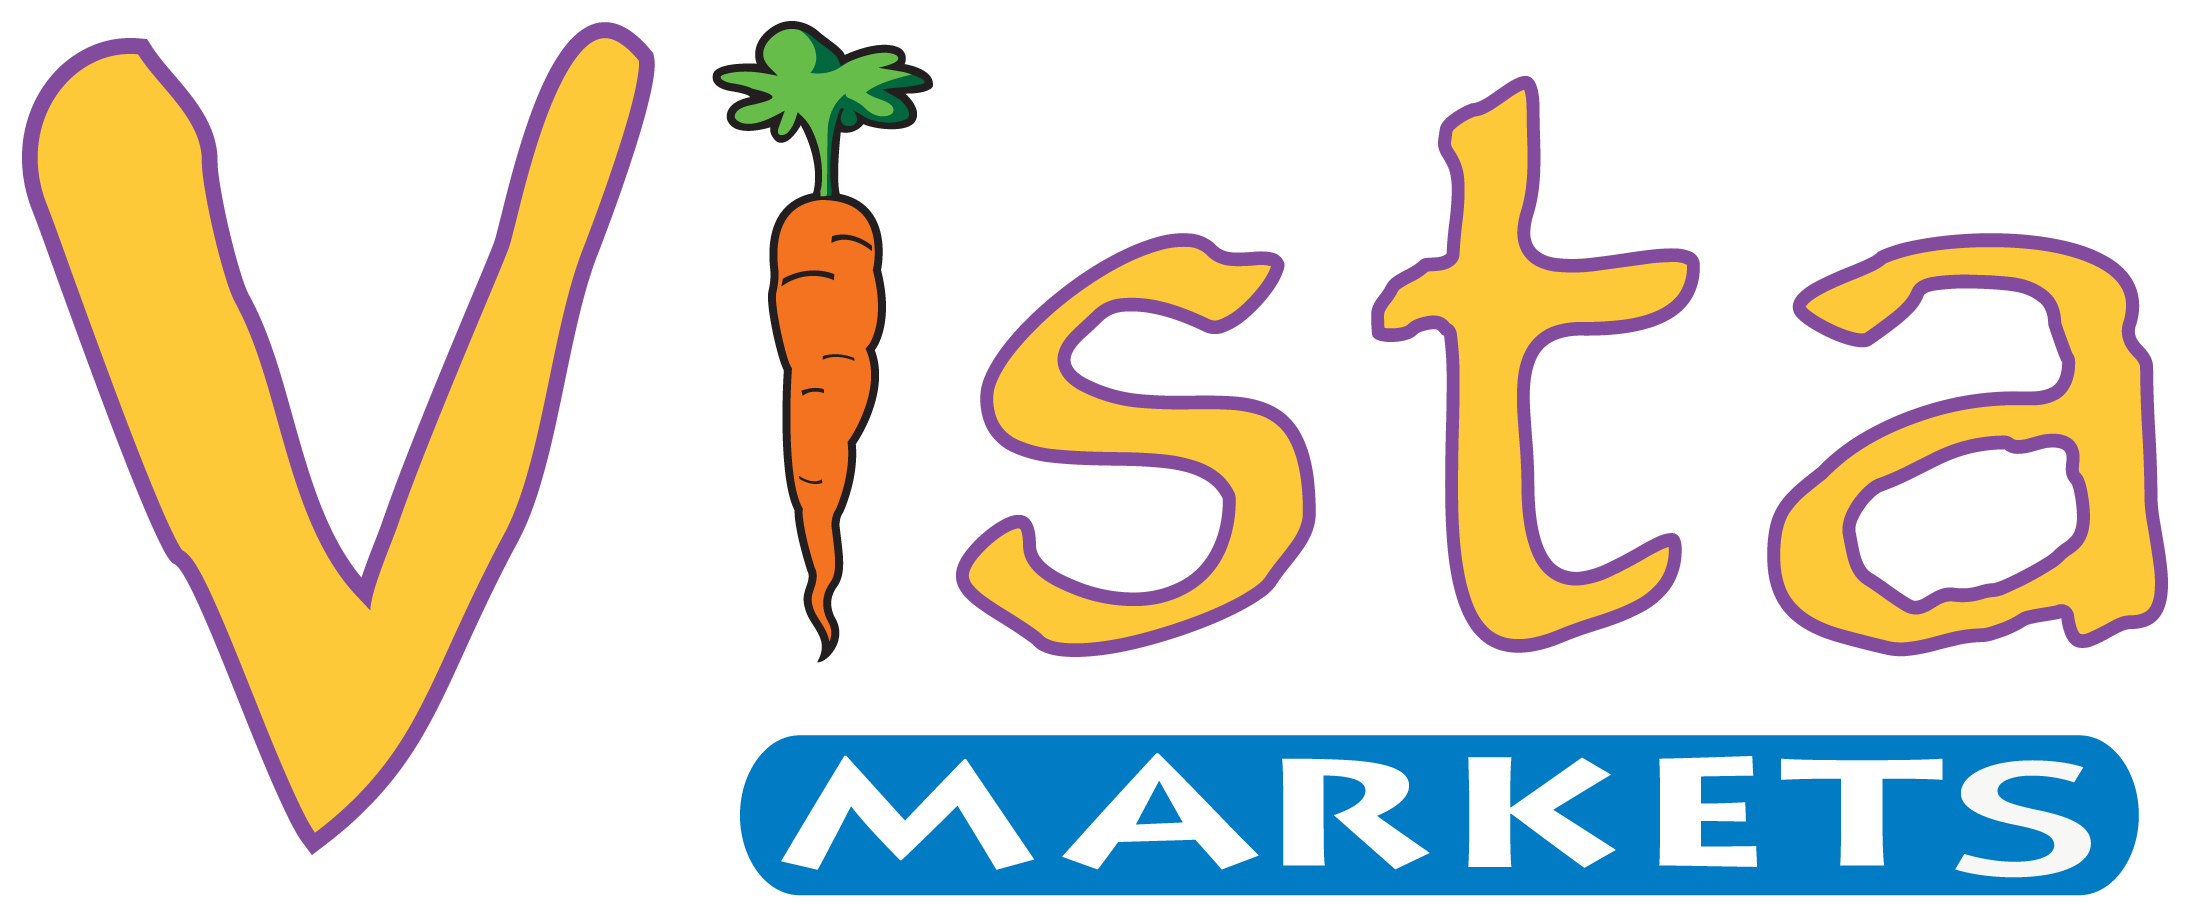 Vista Super Markets - Vista Market Logo Clipart (2197x907), Png Download